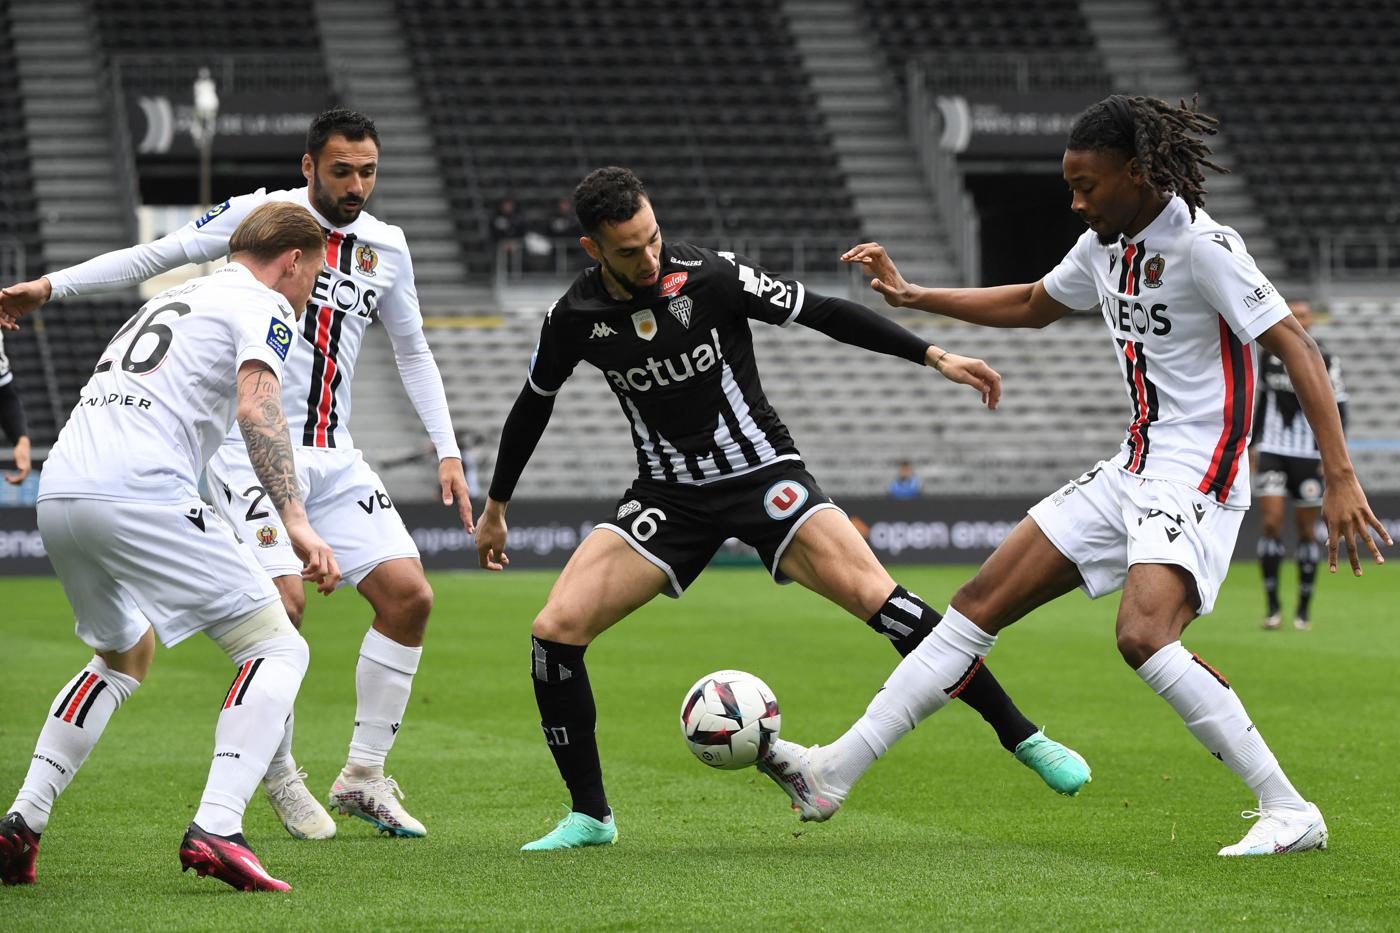 Angers - Nizza - 1:1. Französische Meisterschaft, 29. Runde. Spielbericht, Statistiken